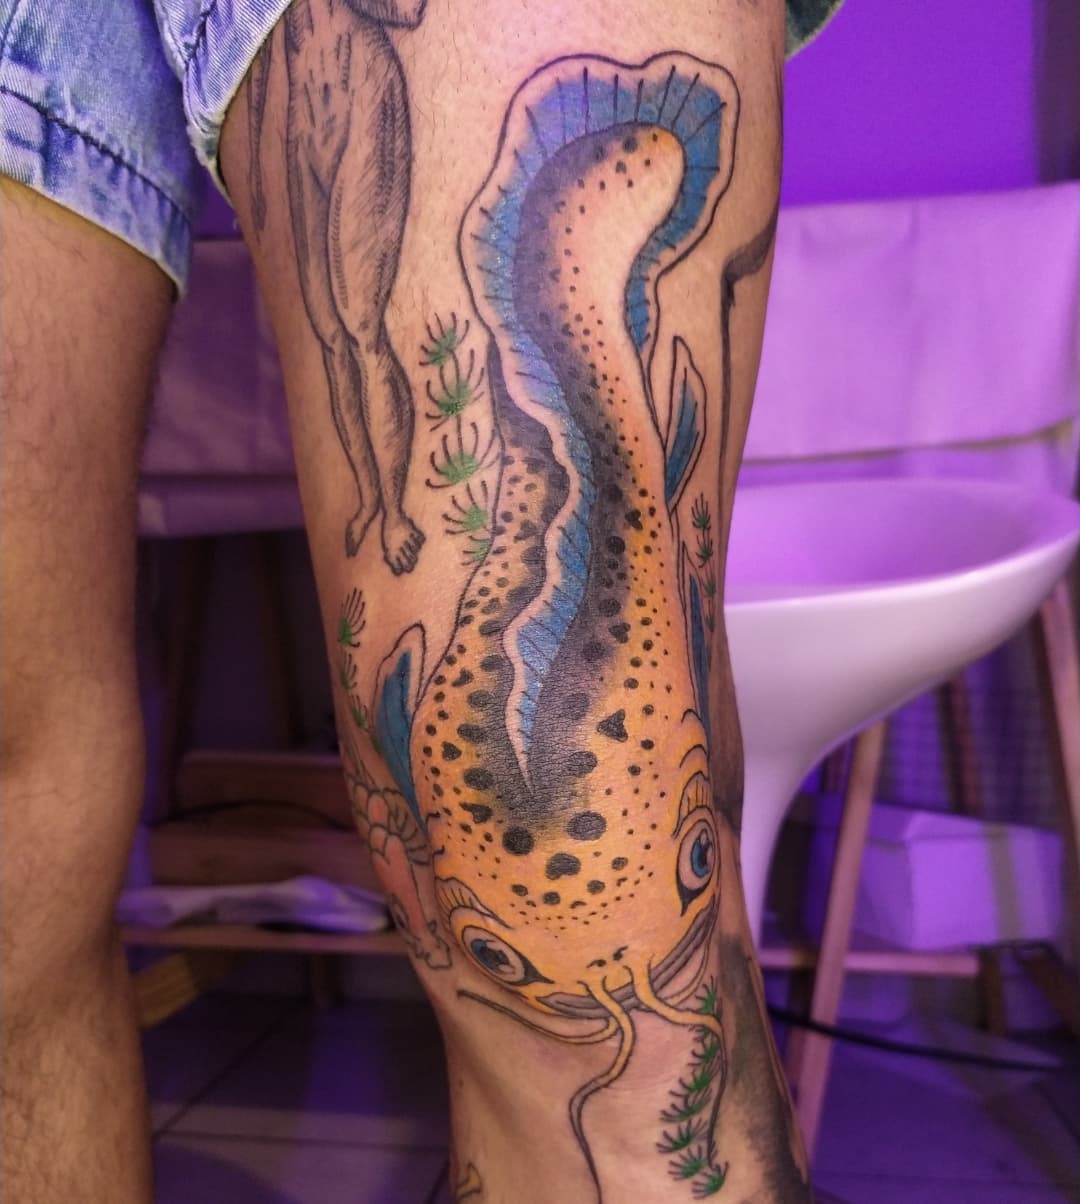 Golden Namazu leg tattoo